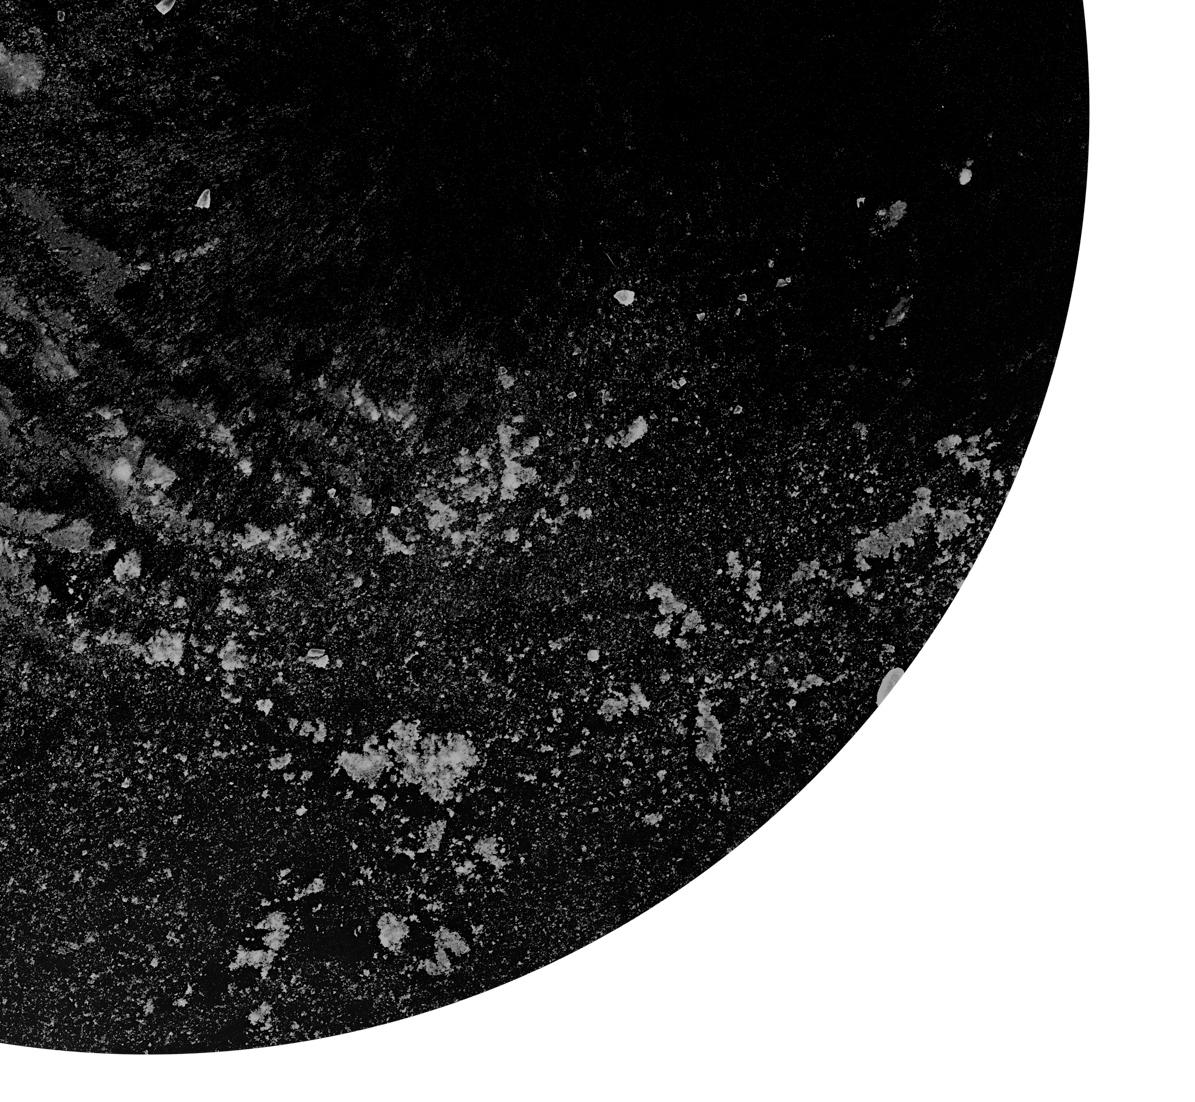 Interstellar, 2019 par Shine Huang
Impression à pigments d'archives sur papier d'art Hahnemuhle.
Taille de l'image : 42 in. H x 42 in. W
Edition 2/6 + 1AP

Signé au verso à l'encre.
non encadré
____________________________
Shine Huang (M.A.F.